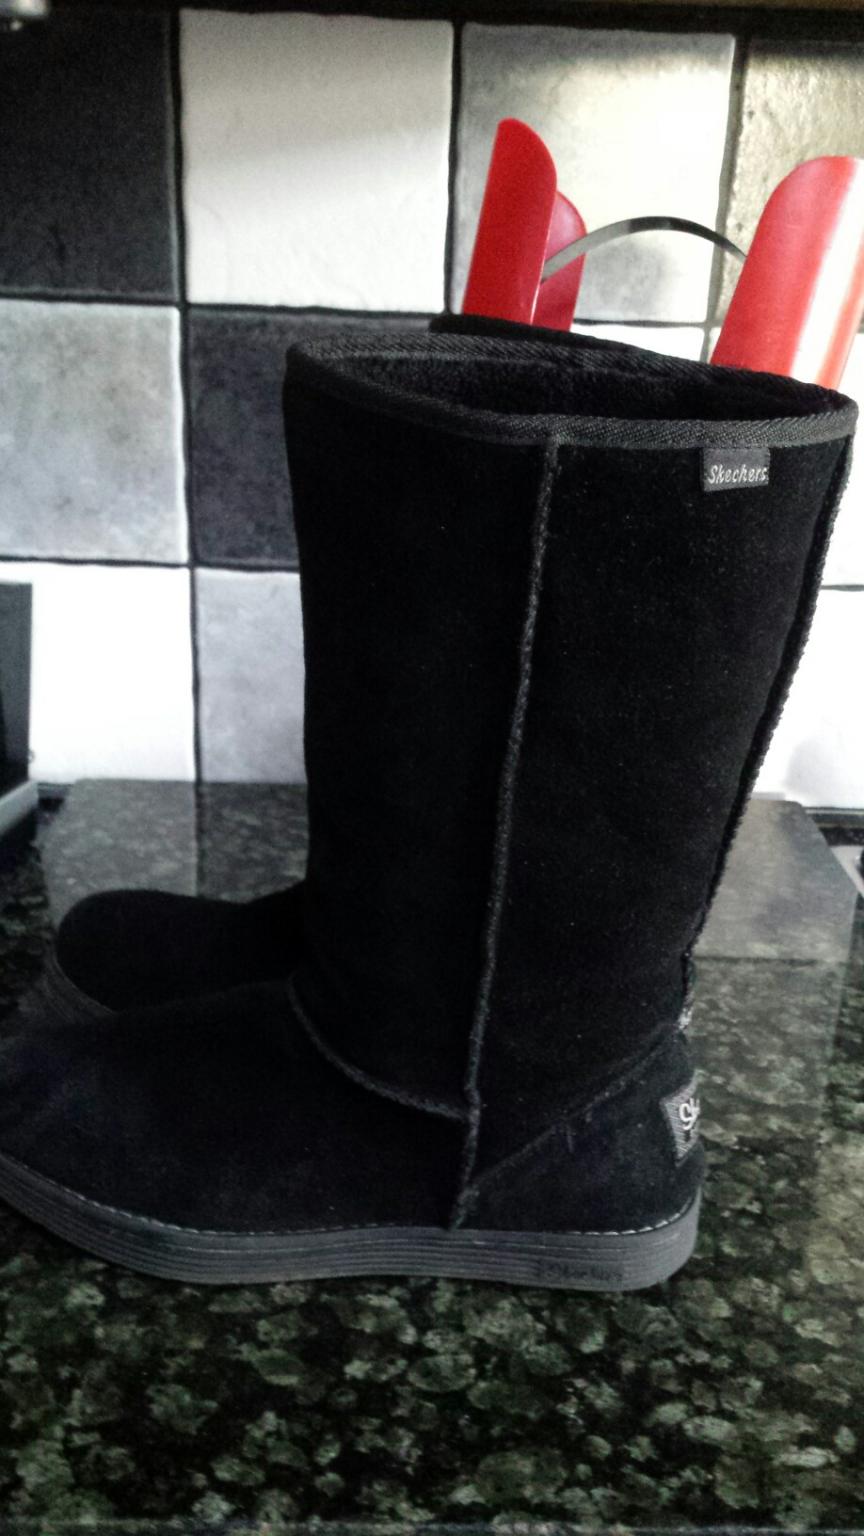 ladies skechers winter ugg type boots 6 